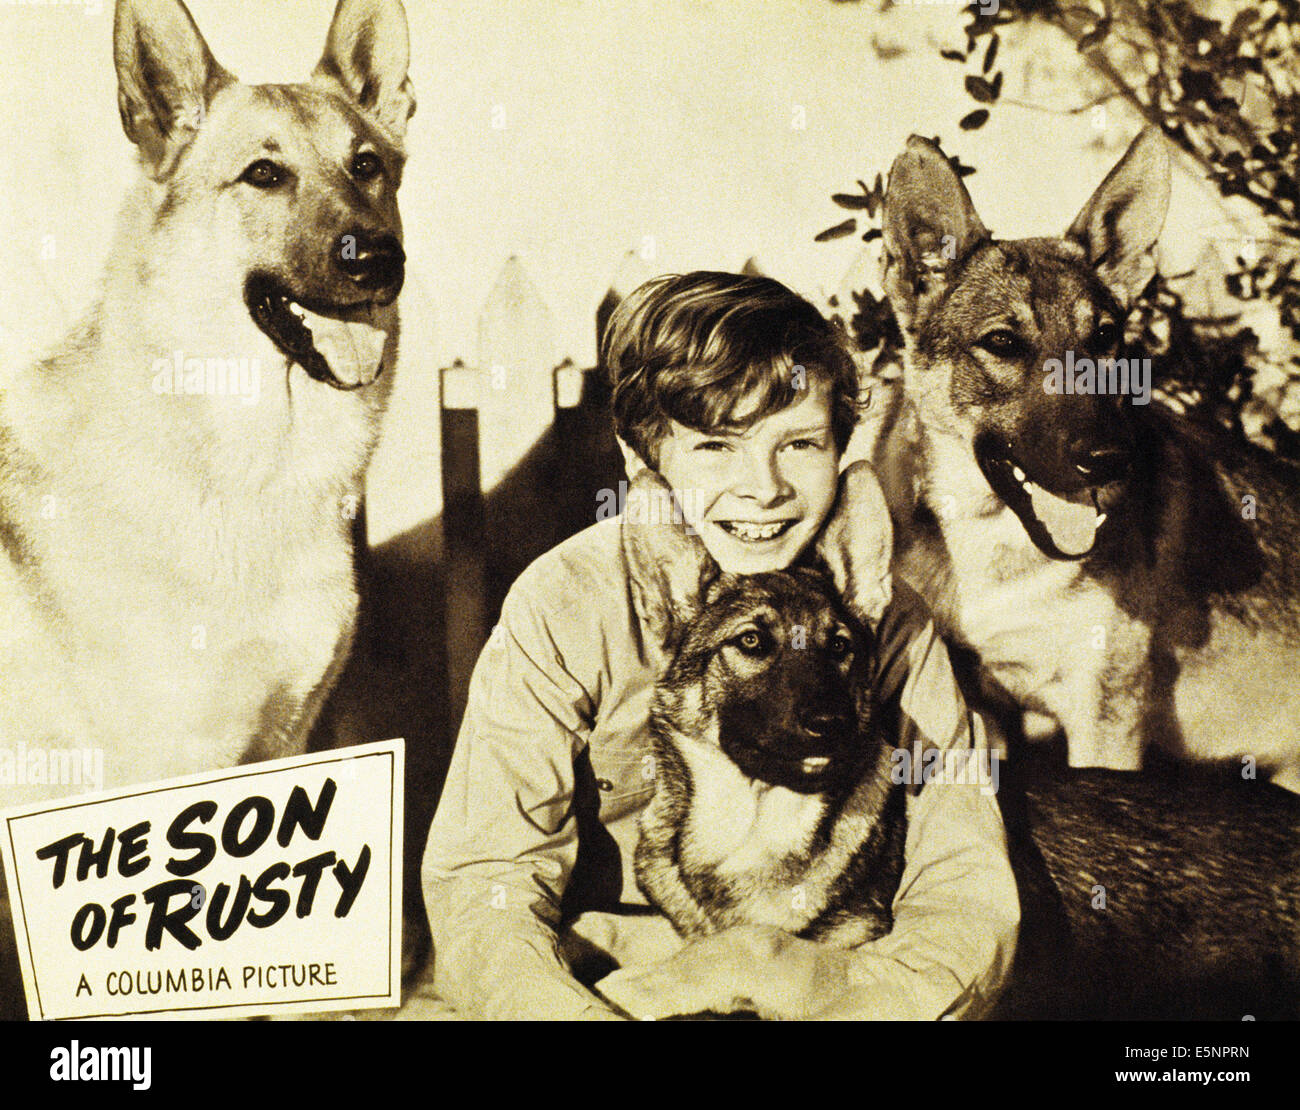 DER Sohn von RUSTY, Ted Donaldson, 1947 Stockfoto